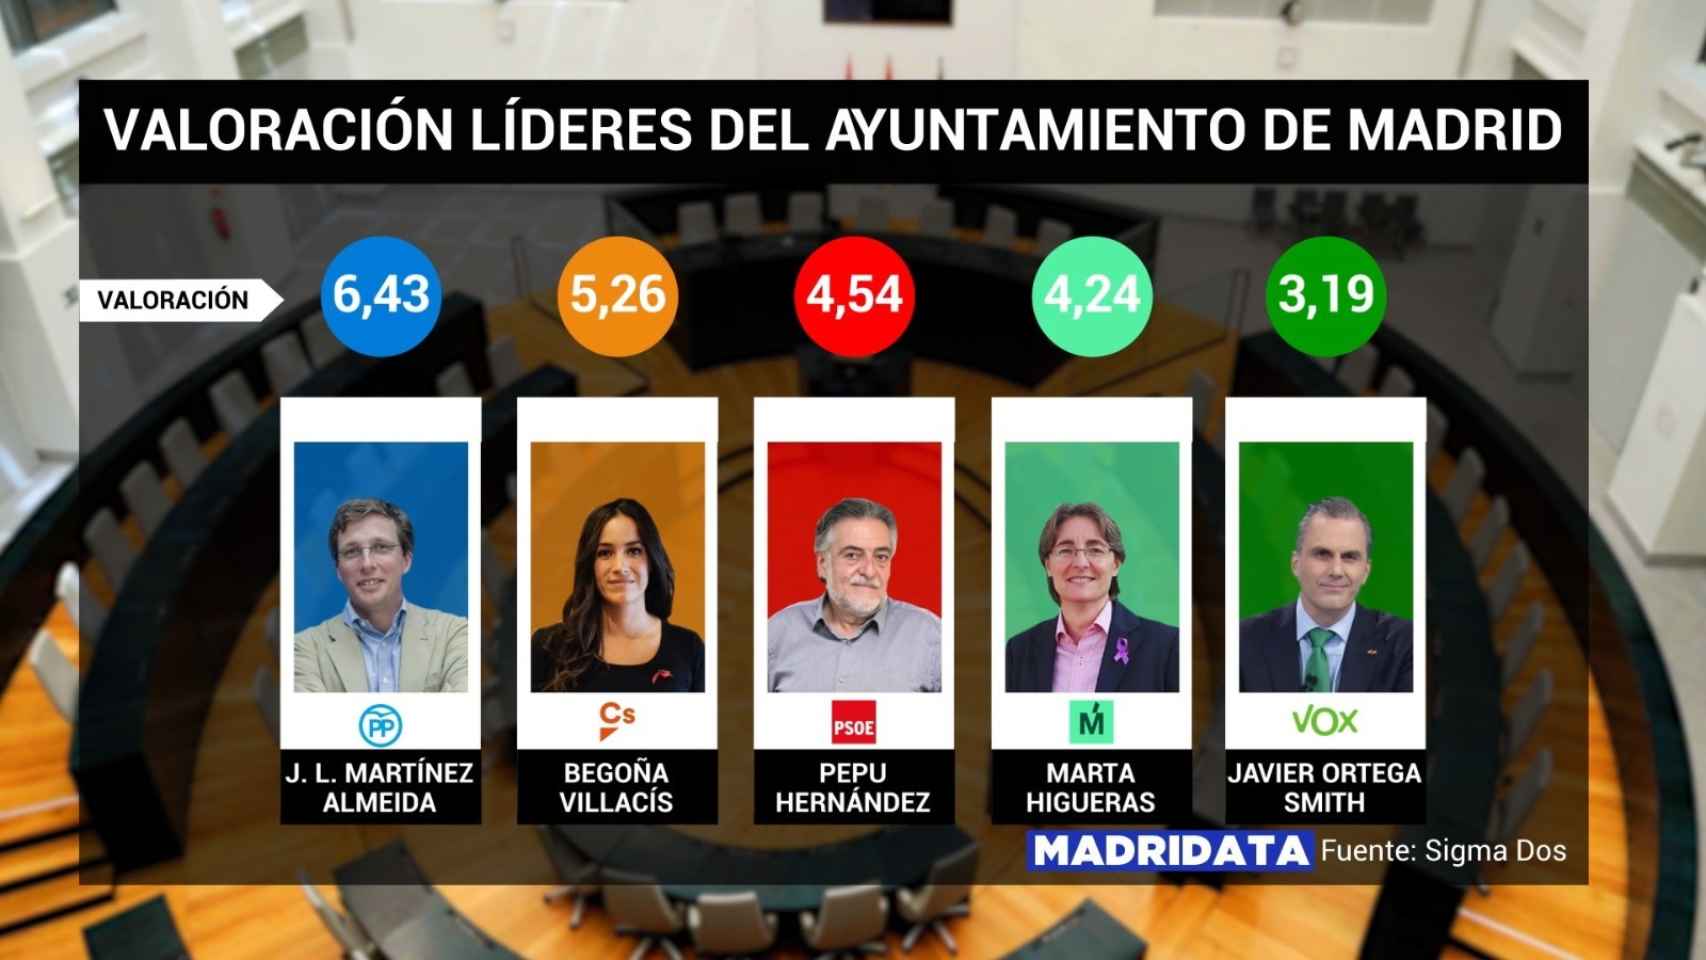 Valoración de los candidatos a la alcaldía de Madrid.